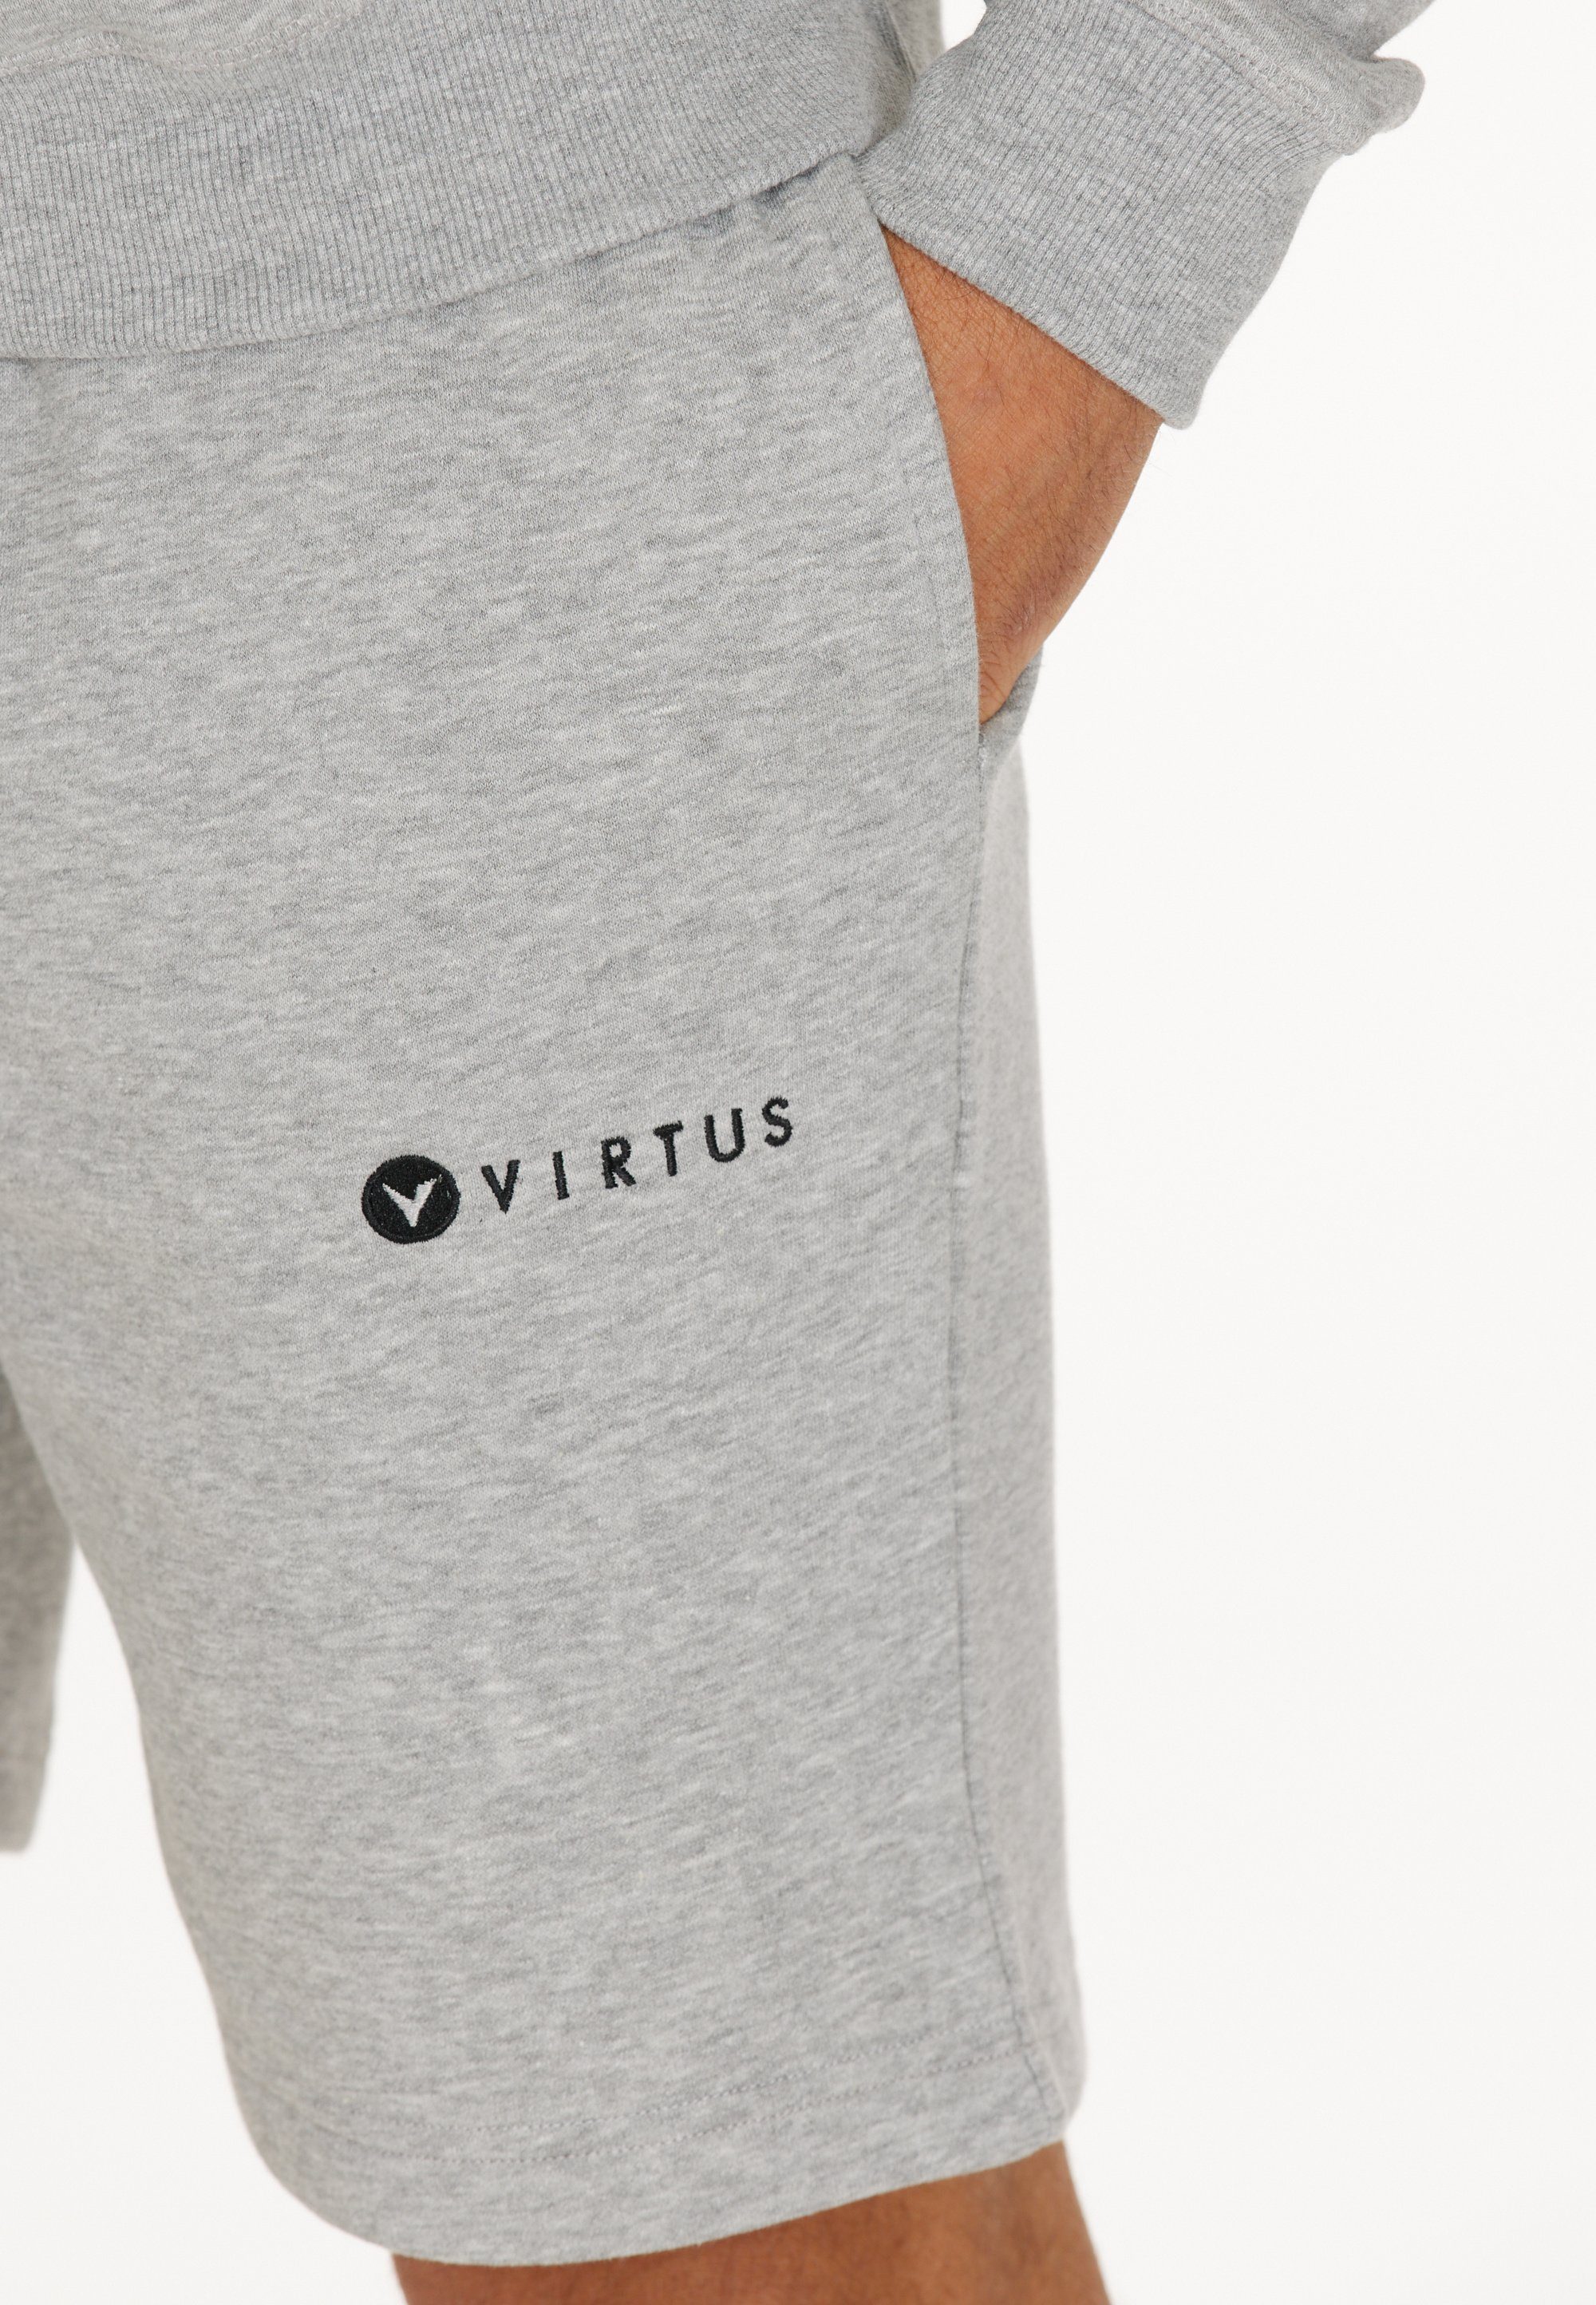 Design Shorts in Virtus sportlichem grau-meliert Kritow